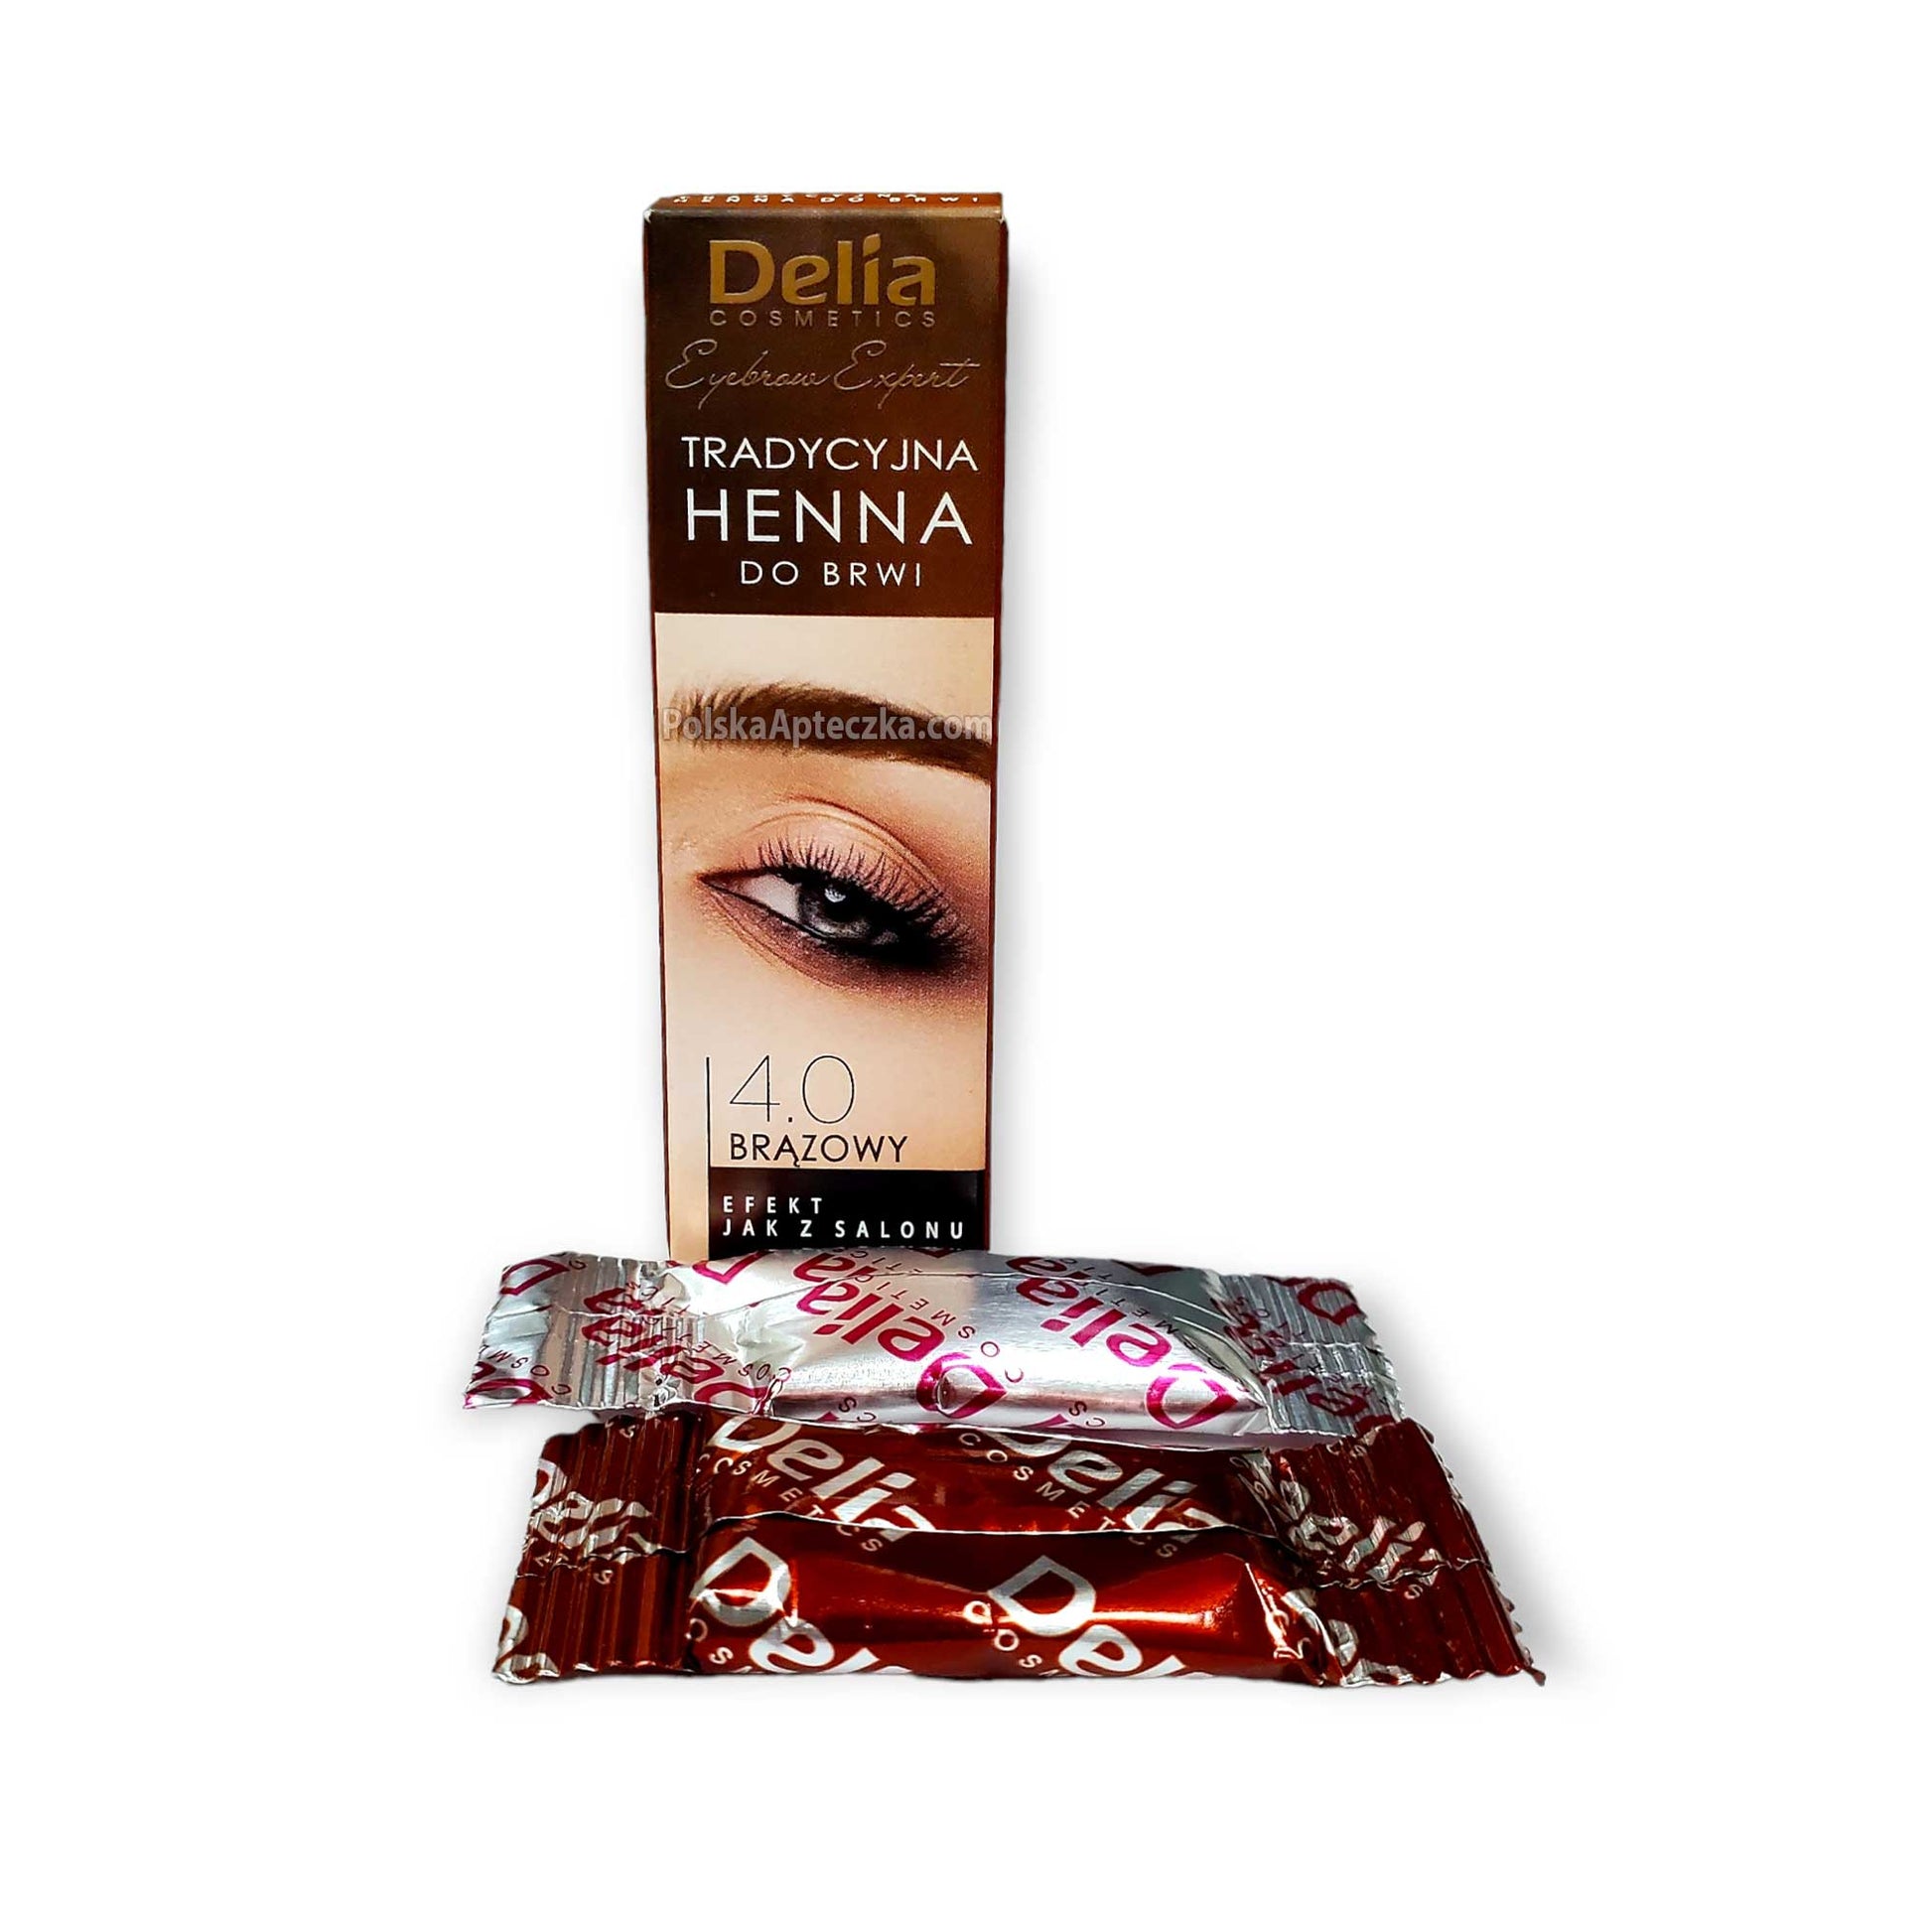 Delia Cosmetics Henna do Brwi, 4.0 BRĄZOWY